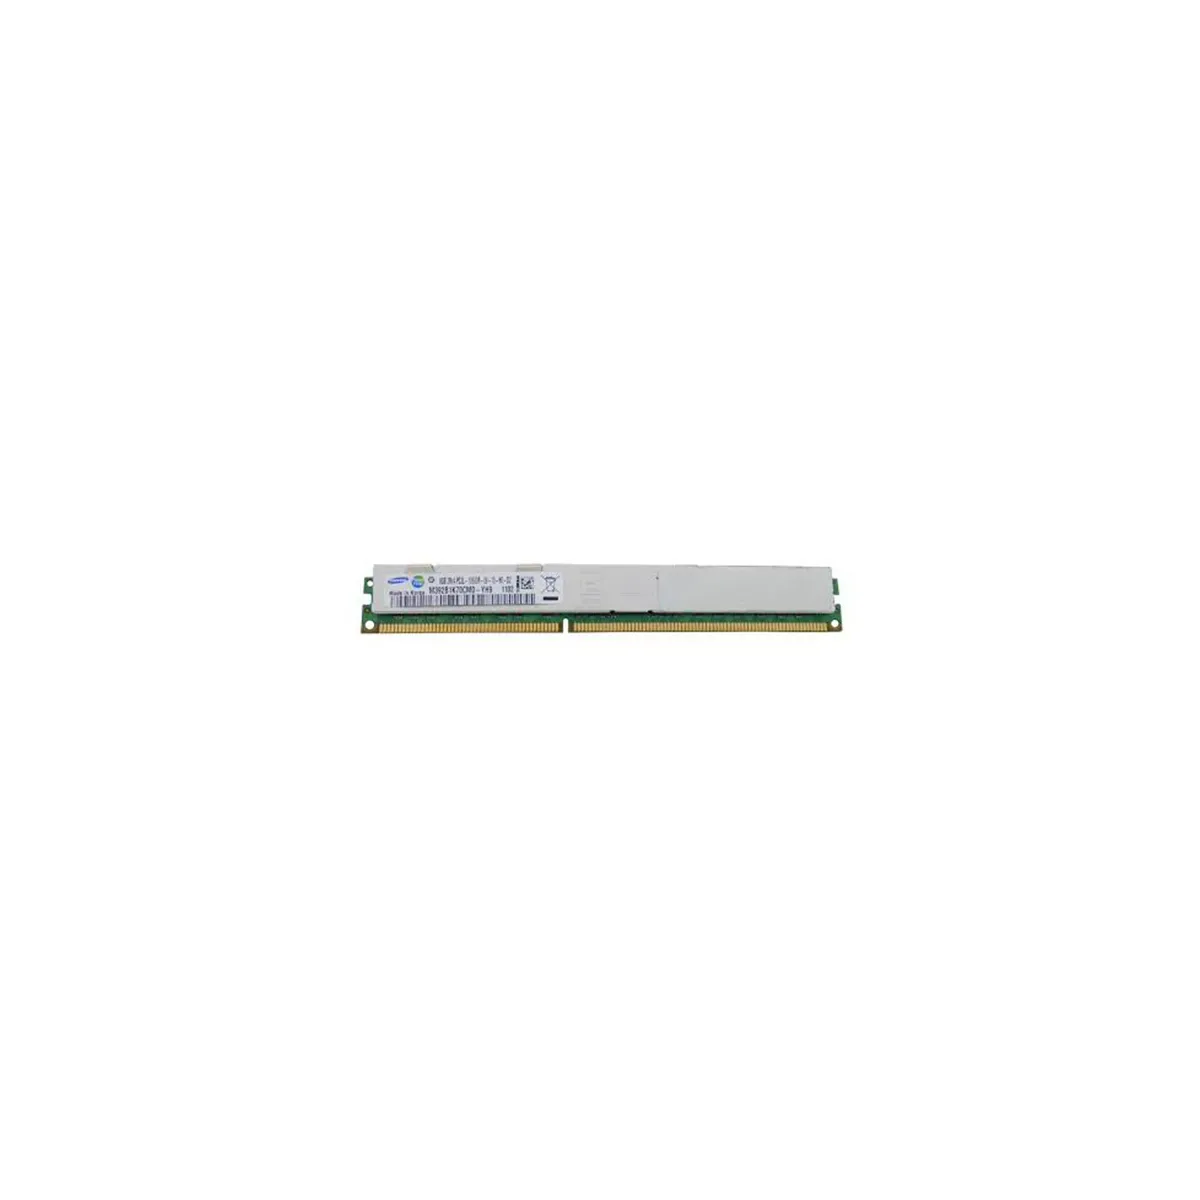 Samsung (M392B1K70CM0-YH9) - 8GB PC3L-10600R (2Rx4, DDR3-1333MHz) RAM